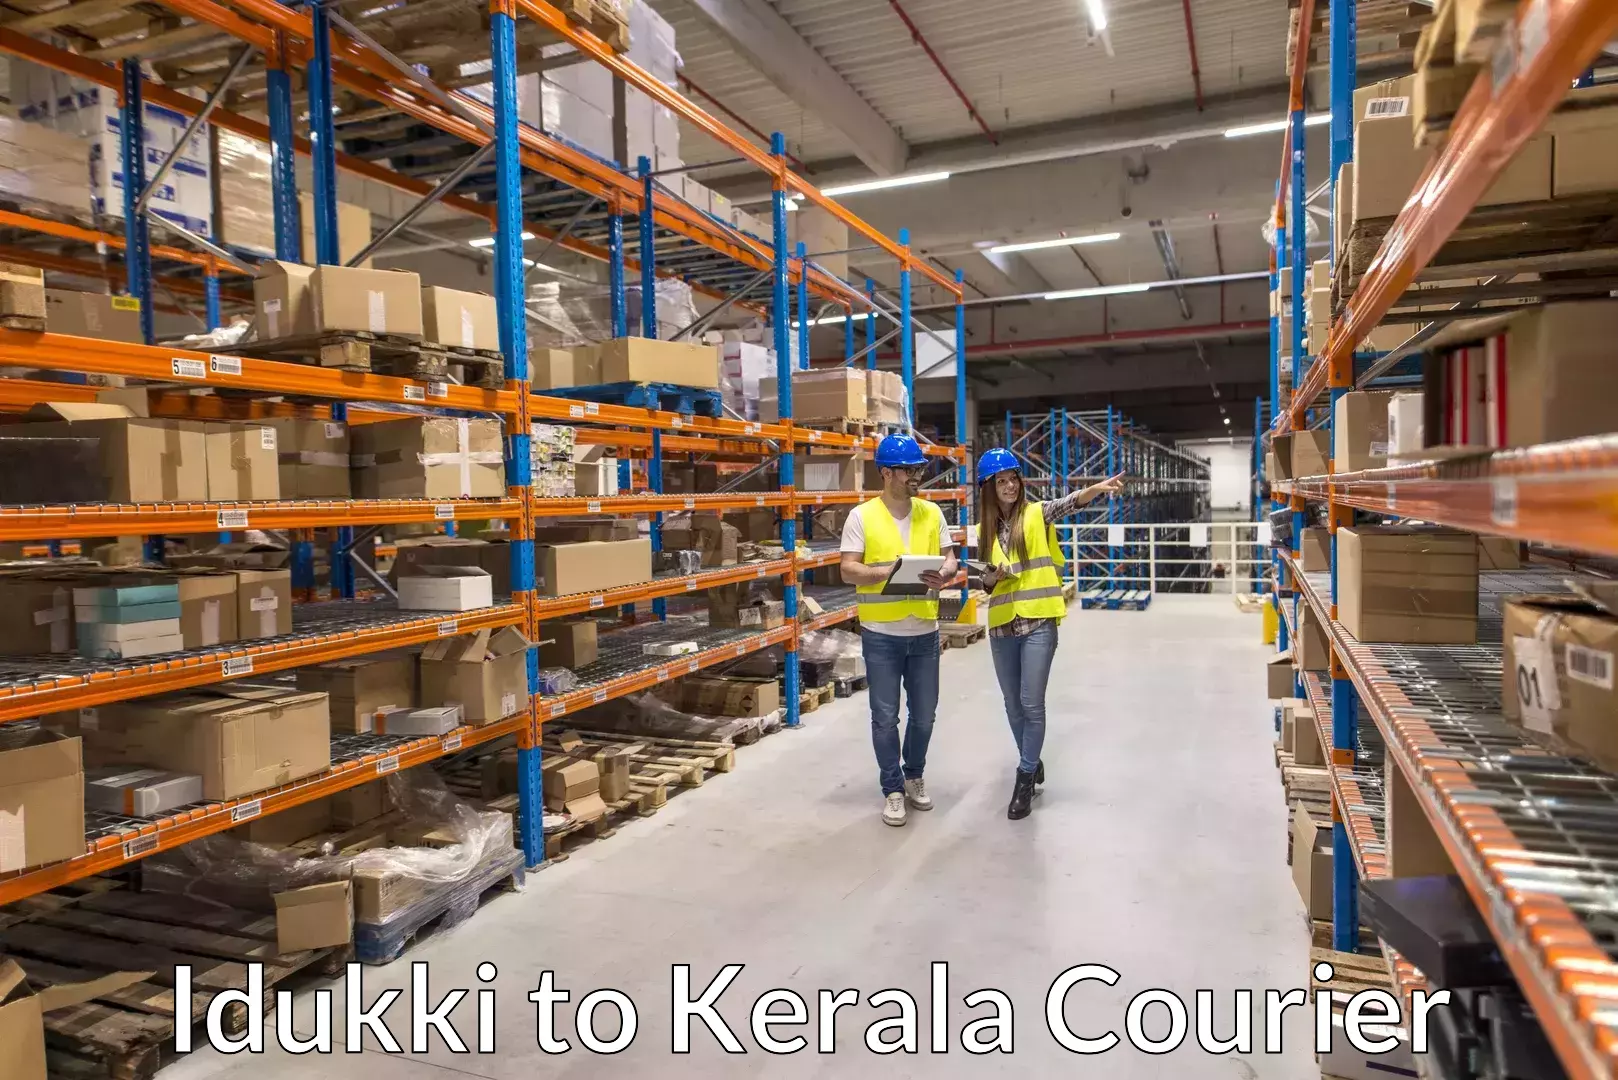 Urgent luggage shipment Idukki to Koothattukulam